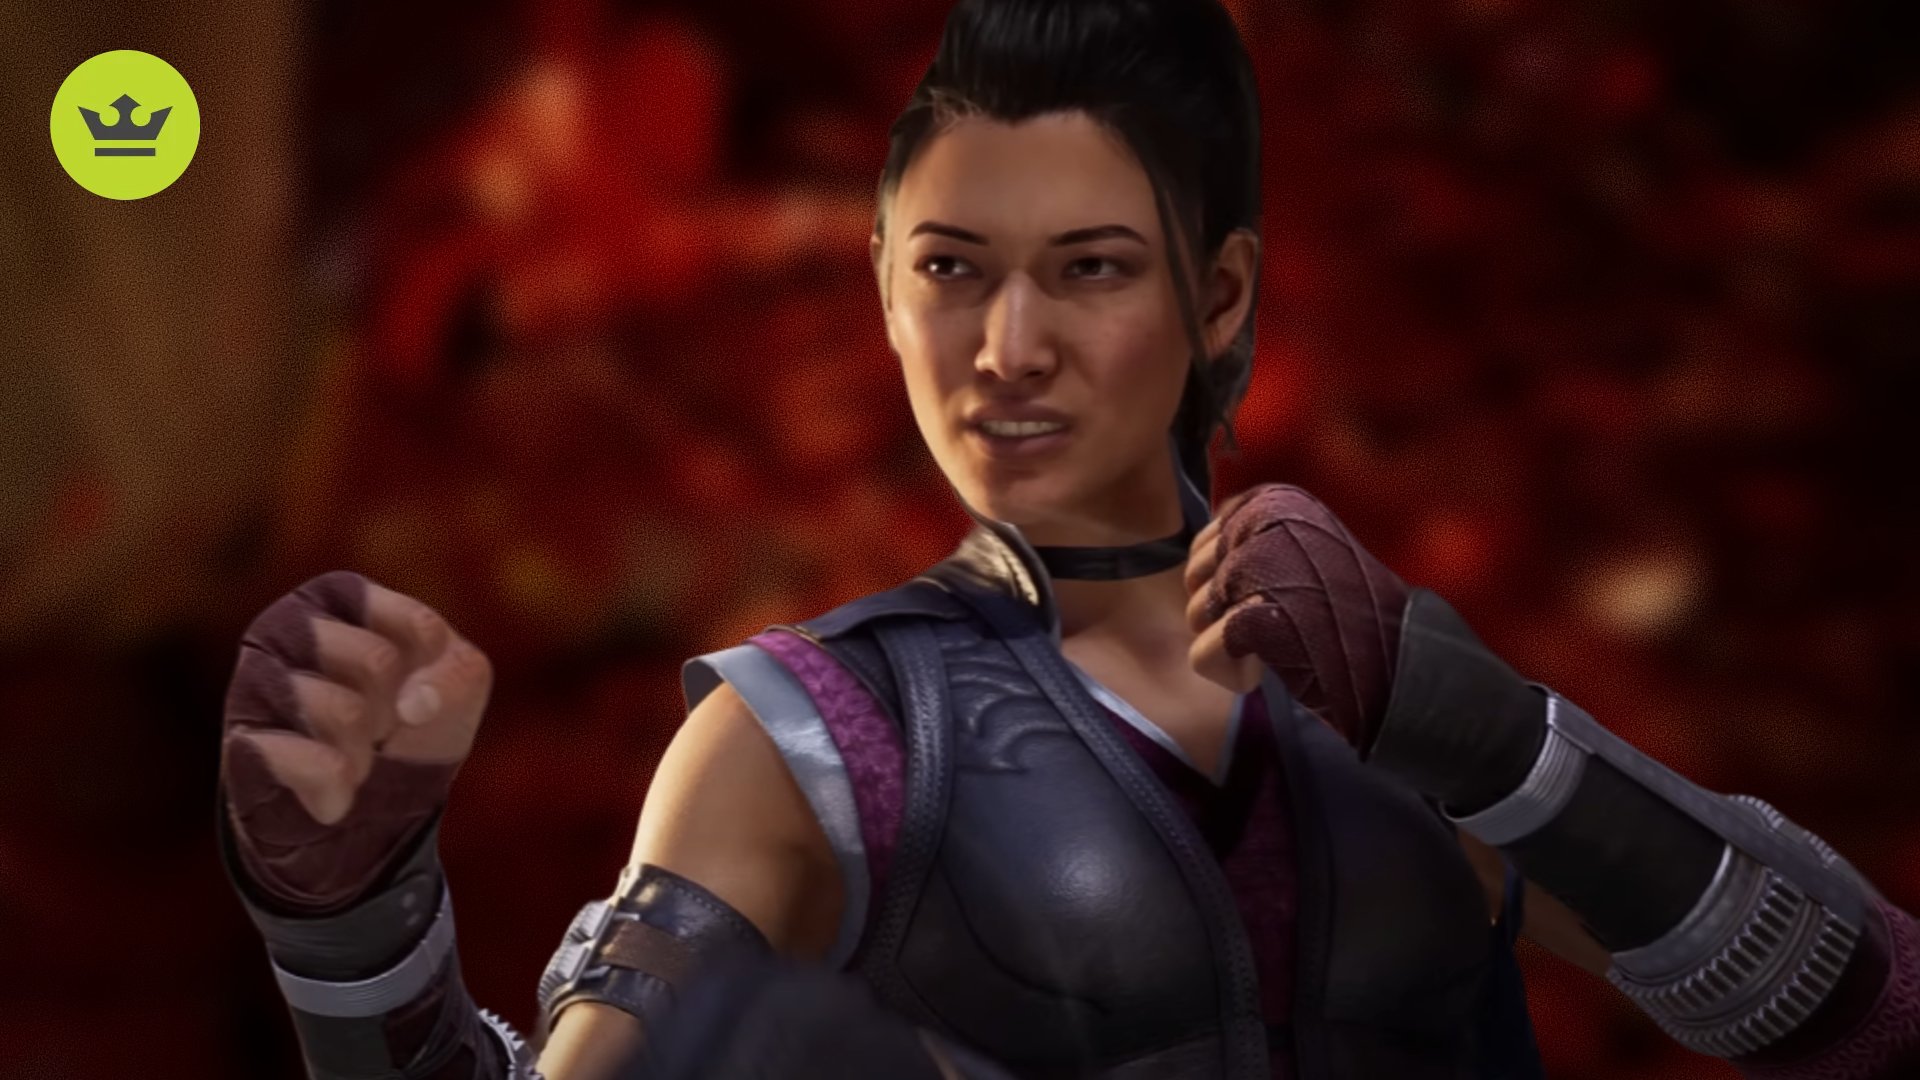 Mortal Kombat 1 Characters: Li Mei can be seen